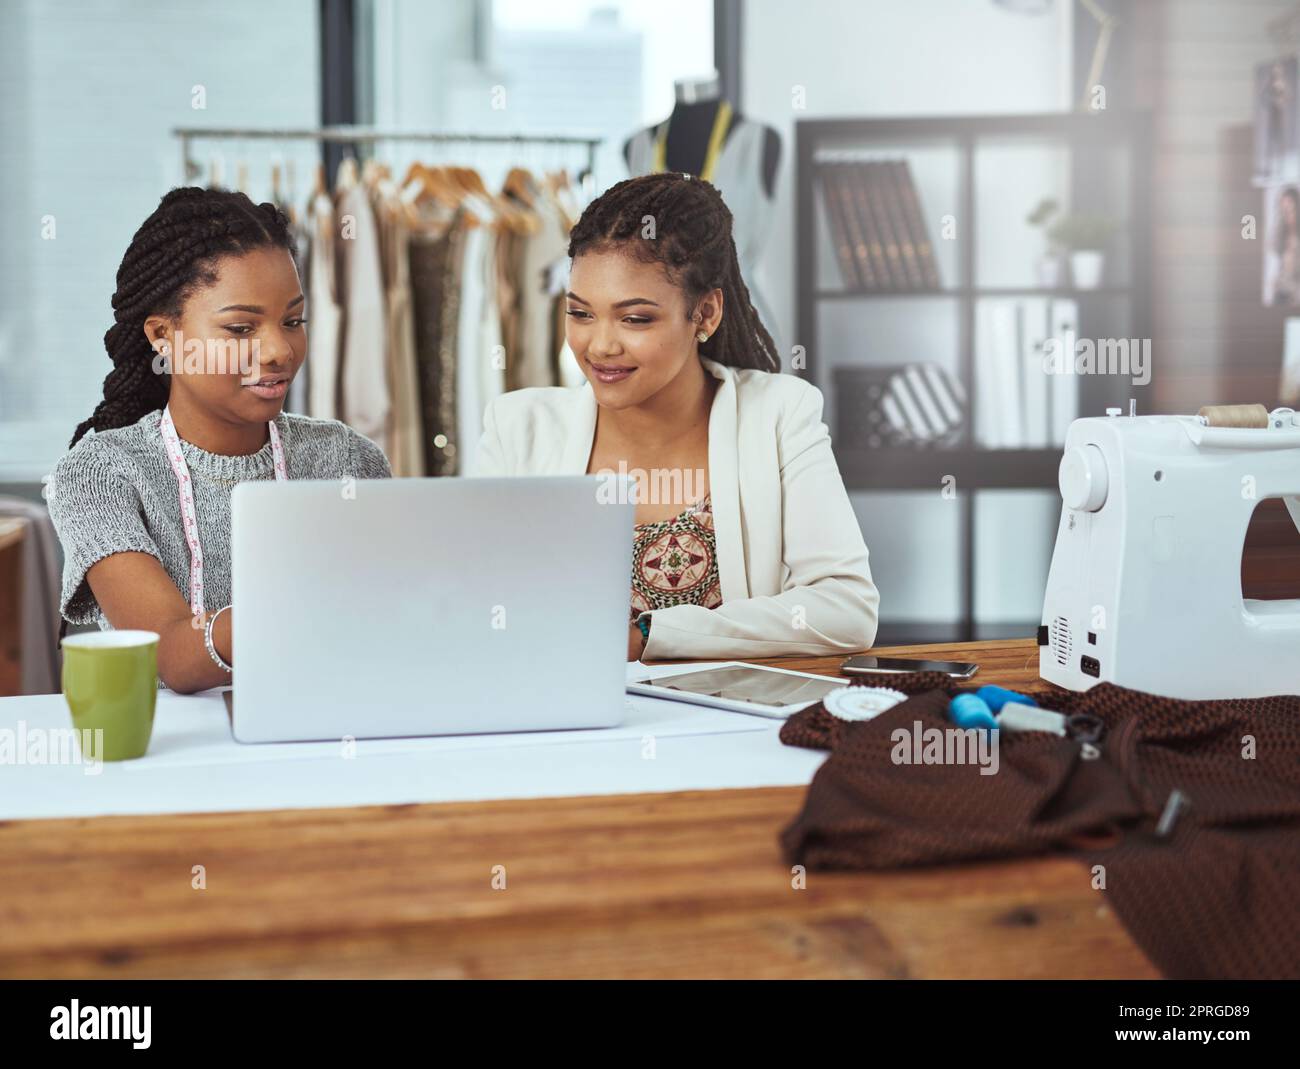 Deux jeunes créateurs de mode travaillant sur un ordinateur portable sont prêts à commencer une nouvelle tendance. Banque D'Images